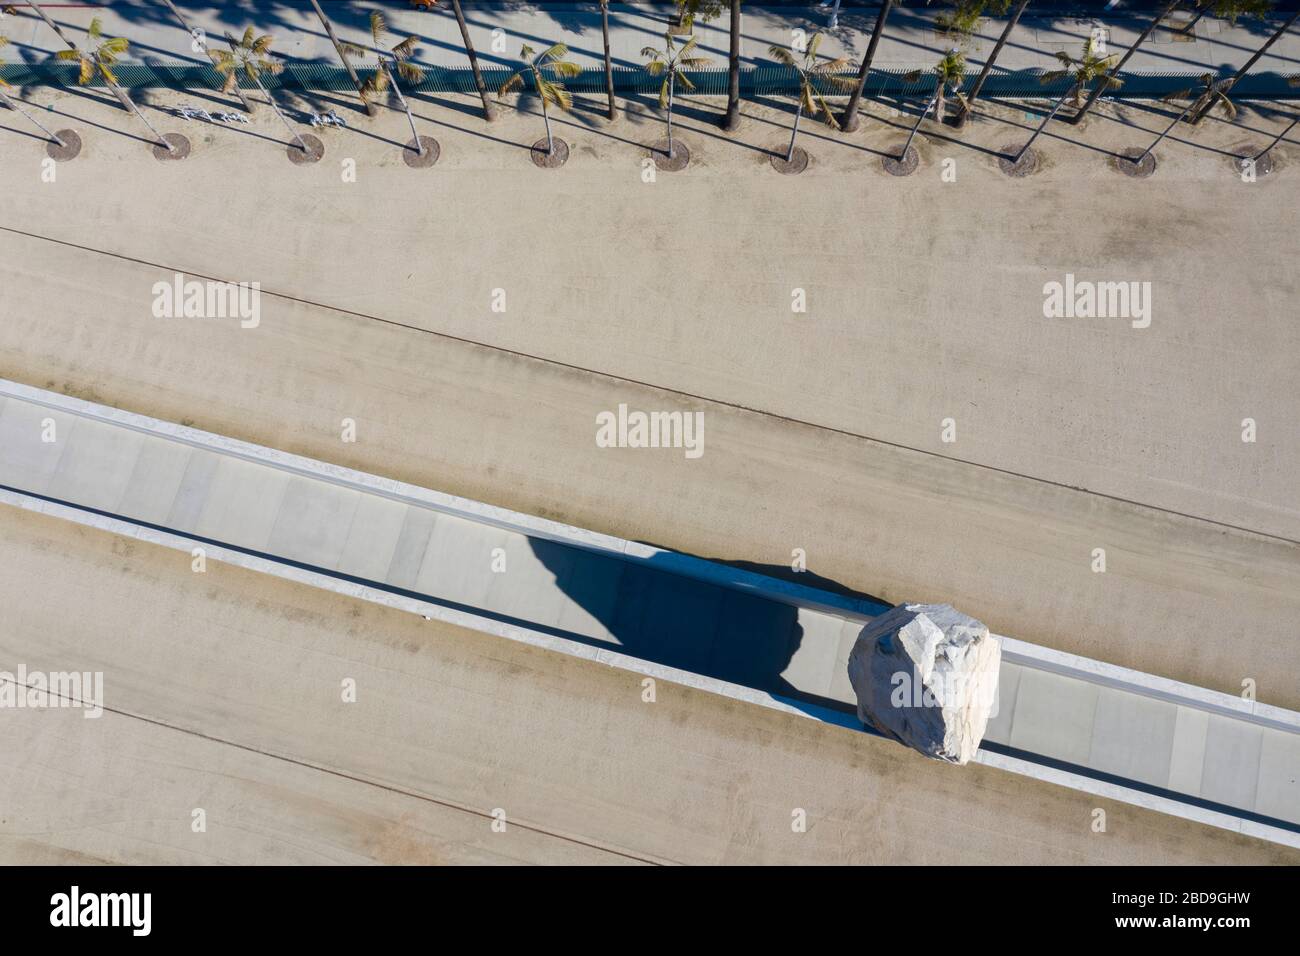 Vue aérienne de la messe lévitée par l'artiste Michael Heizer au musée LACMA, Los Angeles Banque D'Images